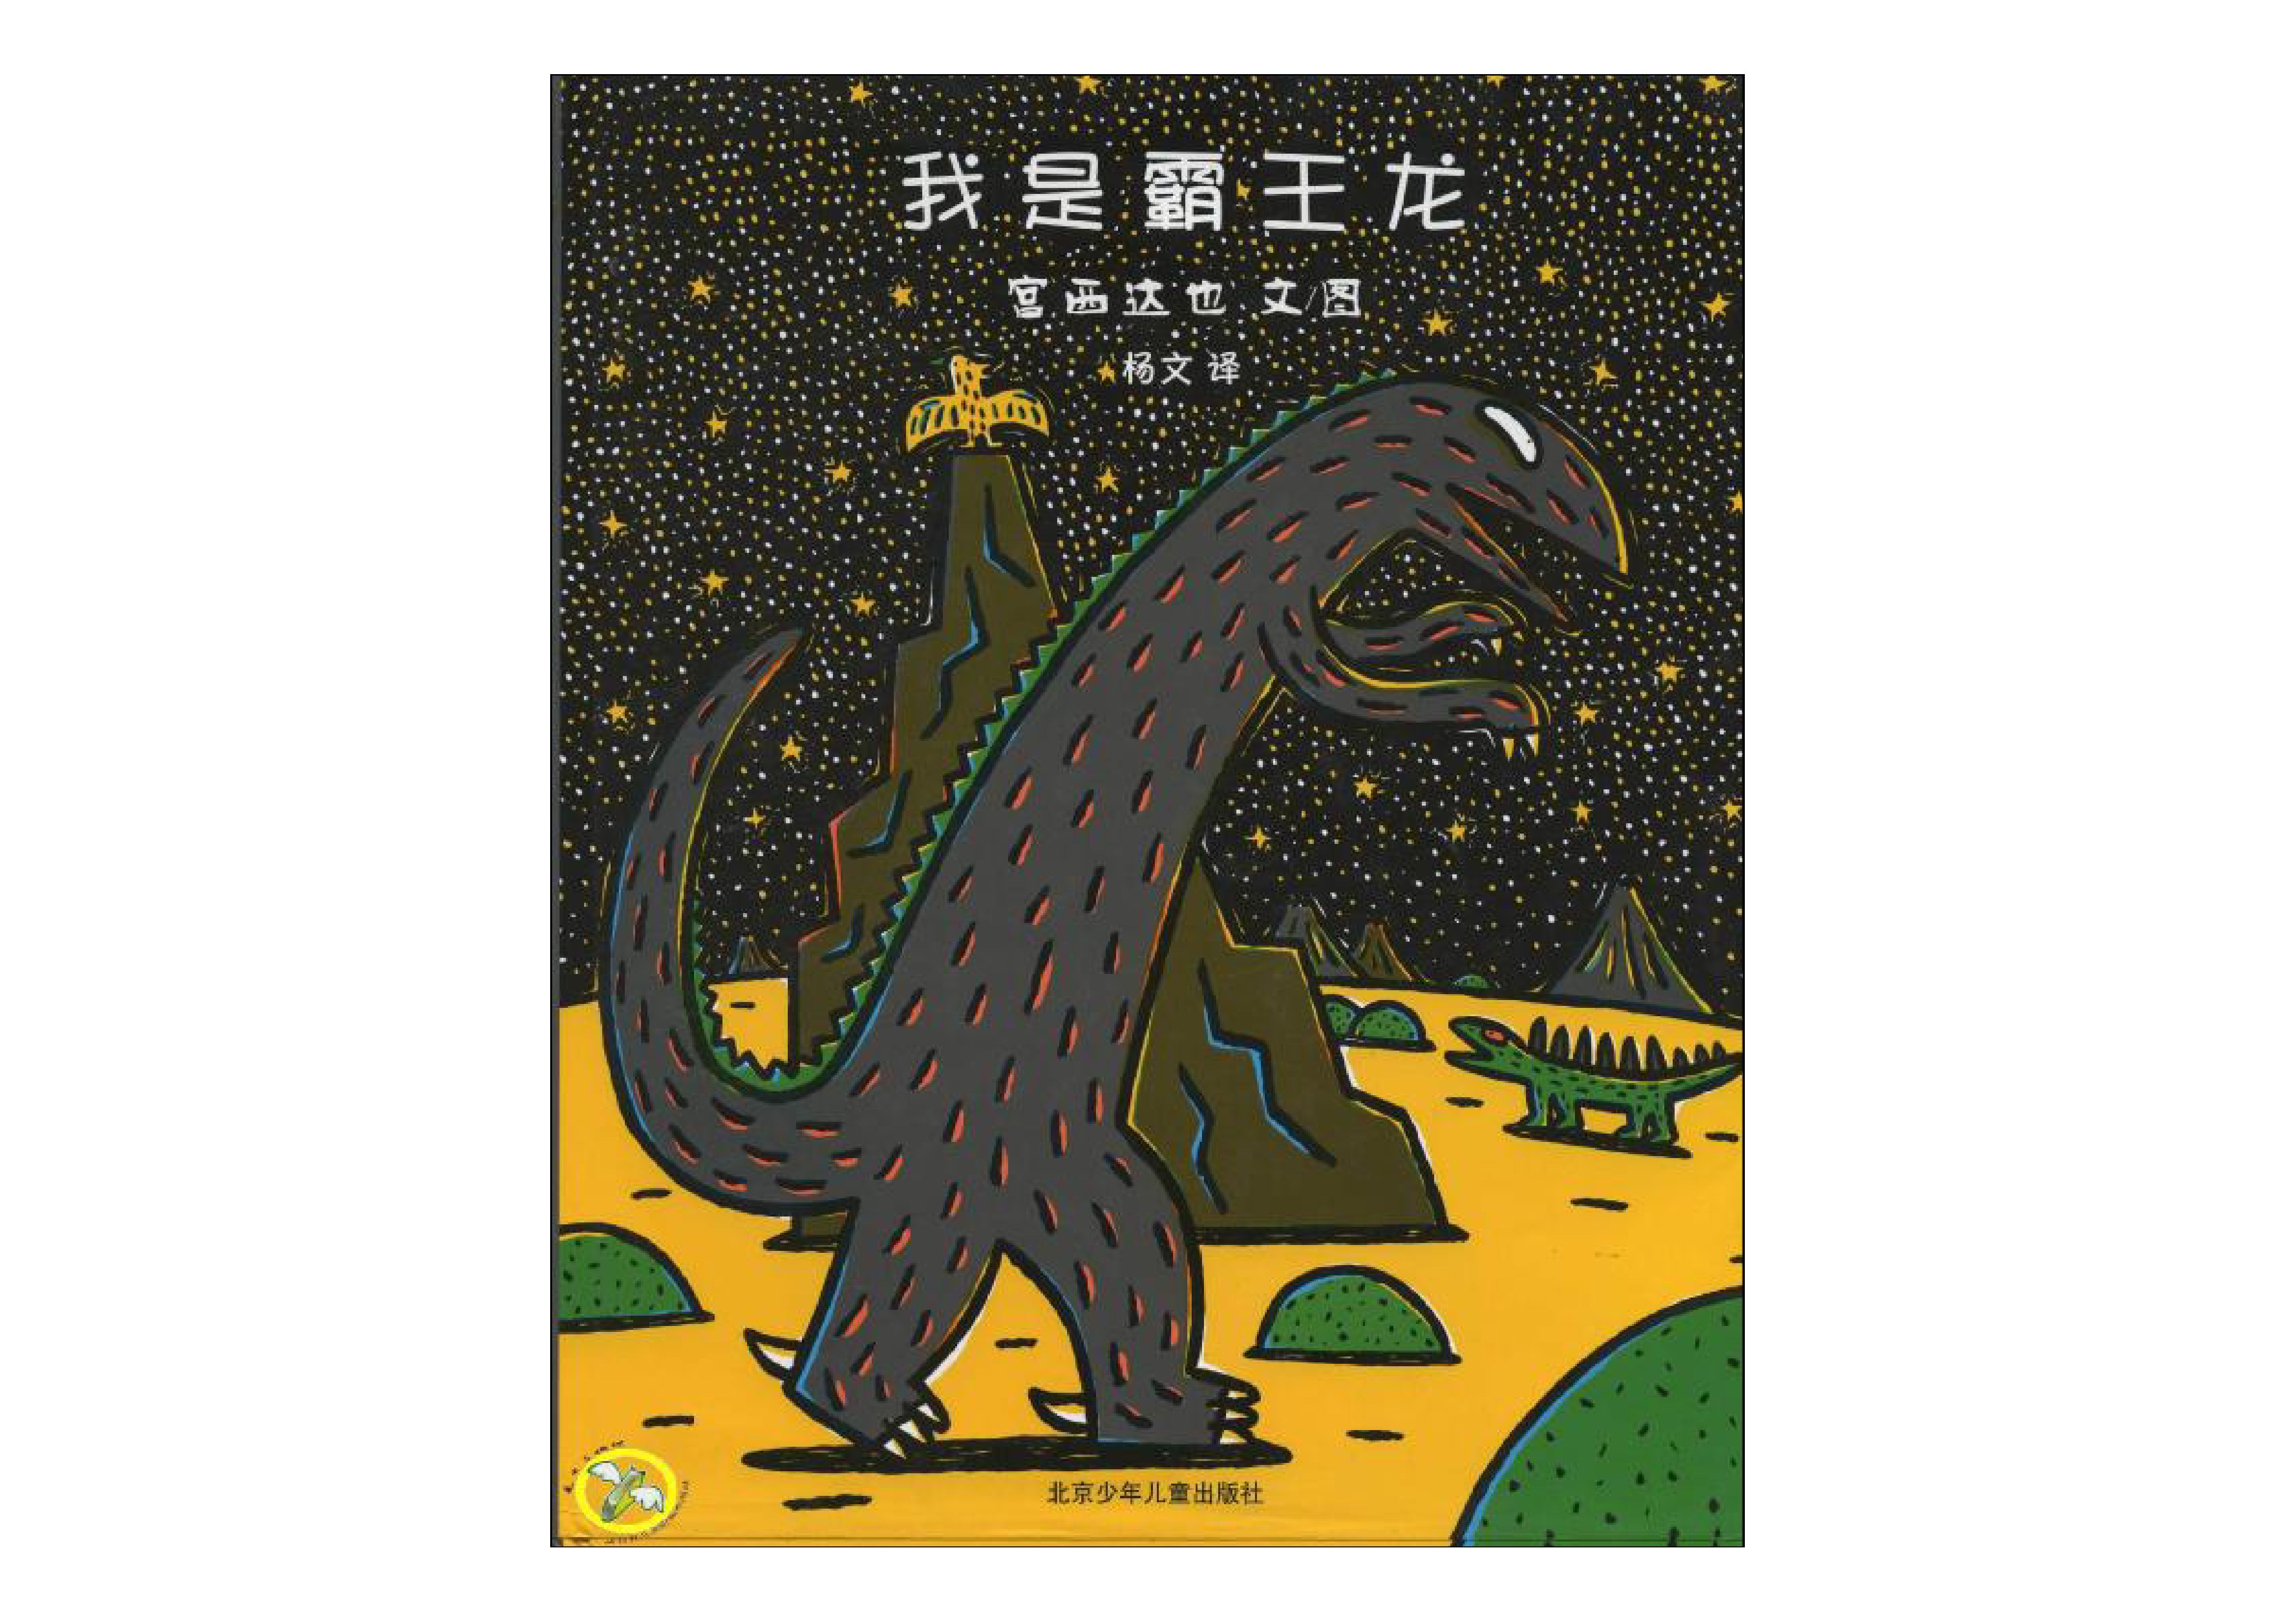 孩子们超爱的恐龙故事,关于善良,有声绘本故事《我是霸王龙》